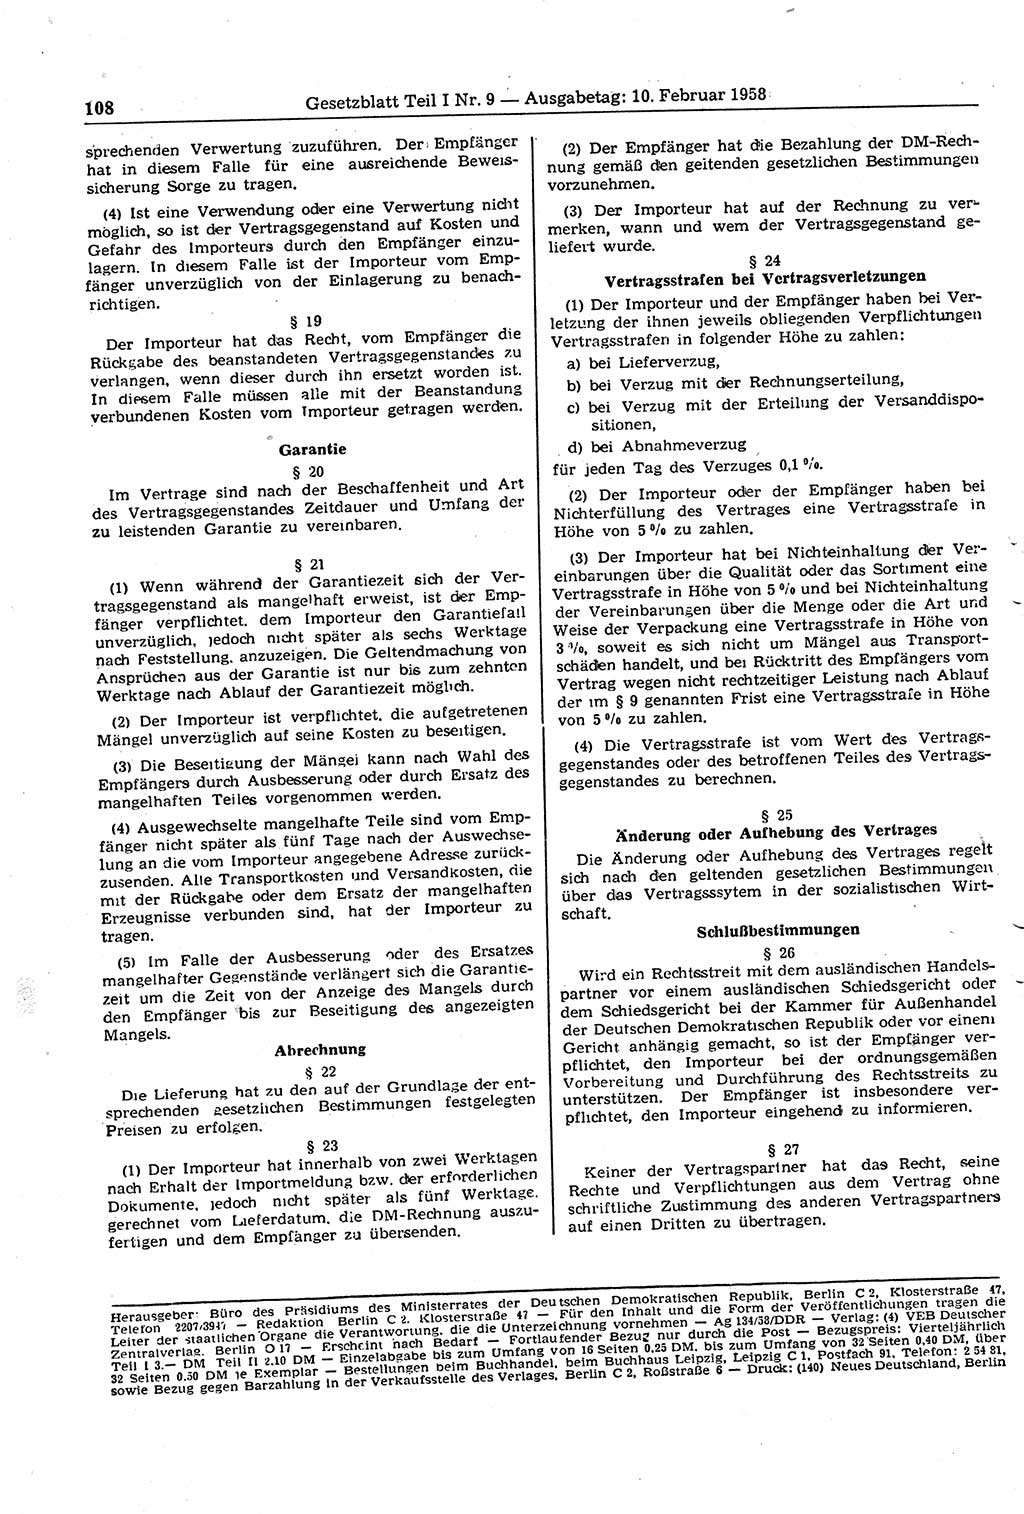 Gesetzblatt (GBl.) der Deutschen Demokratischen Republik (DDR) Teil Ⅰ 1958, Seite 108 (GBl. DDR Ⅰ 1958, S. 108)